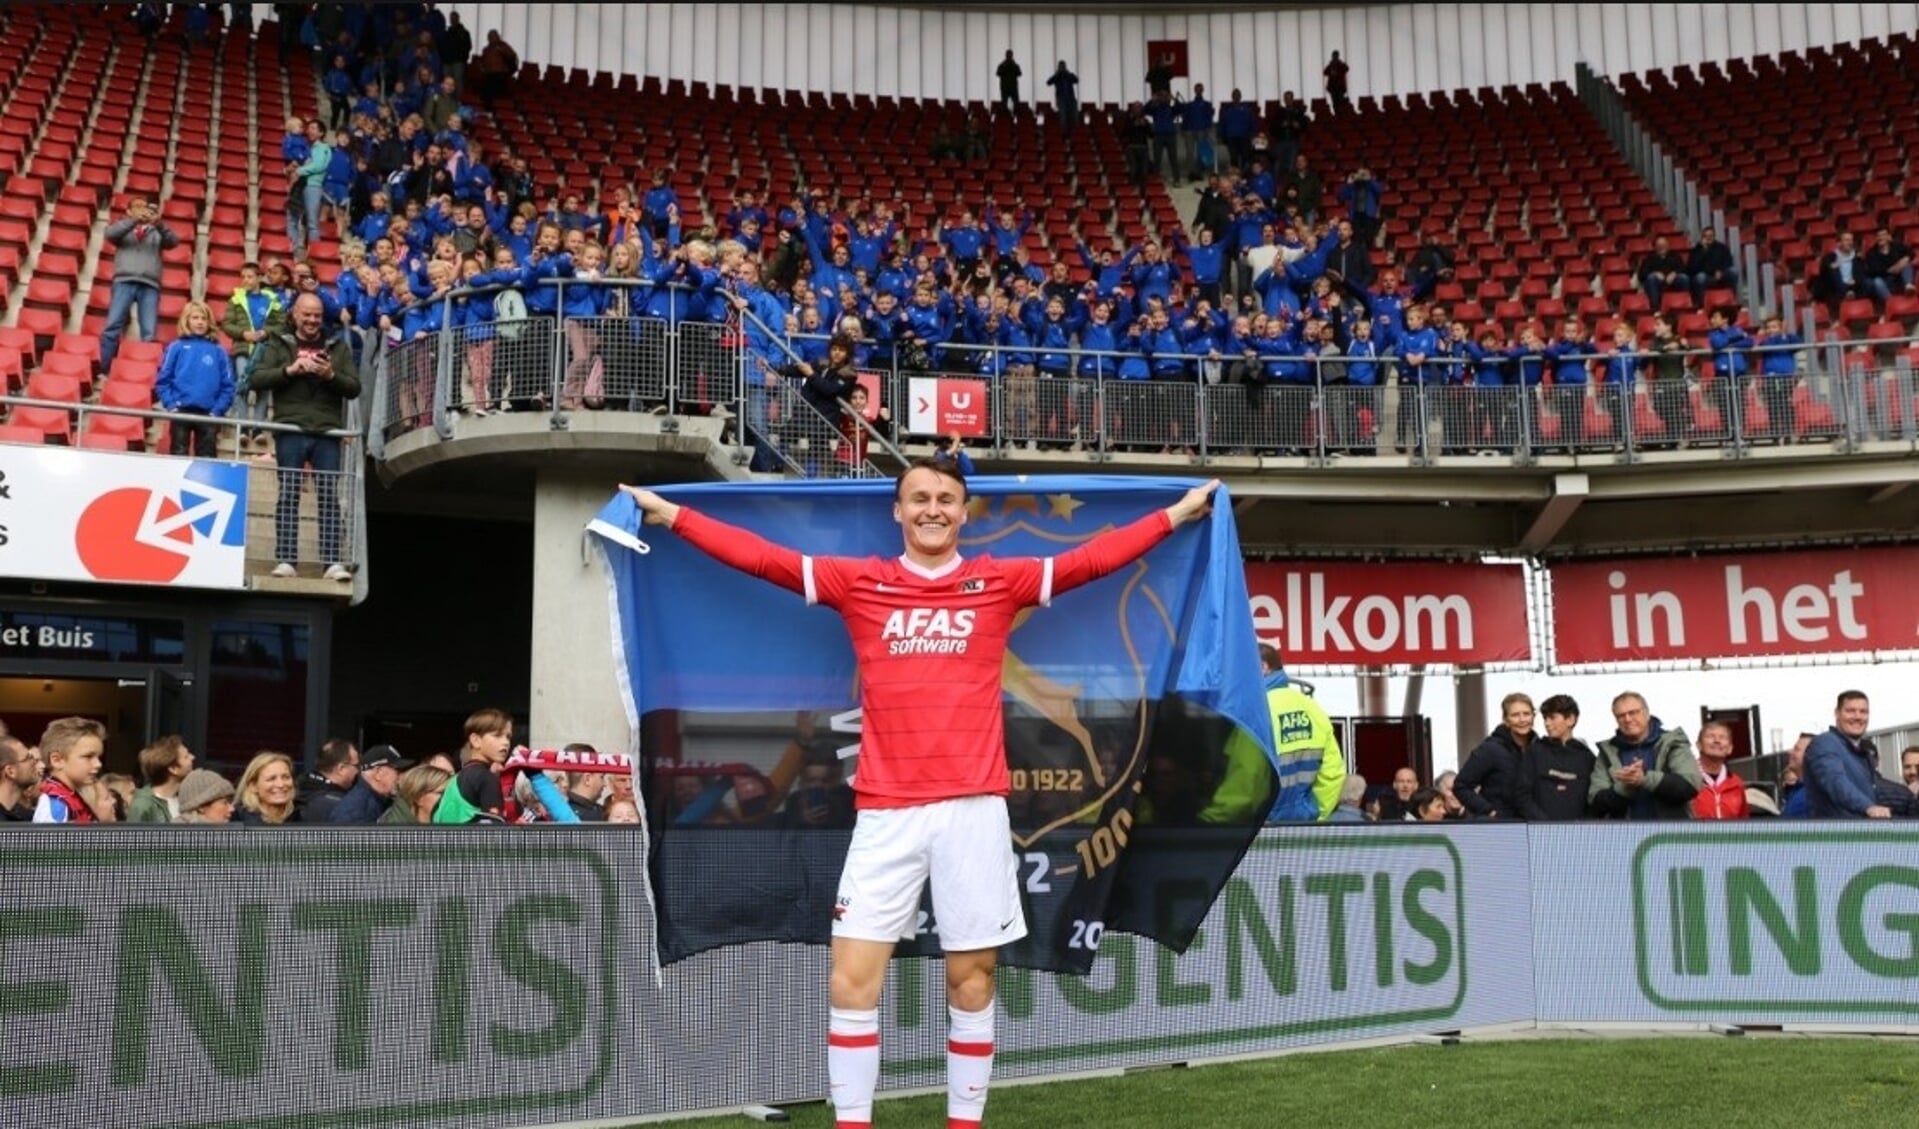 Nadat het laatste fluitsignaal geklonken had, en de spelers van AZ de ereronde voltooid hadden, kwam Peer Koopmeiners nog één keer het veld op, om met de Vitesse-vlag en de jeugdspelers op de foto te gaan. 